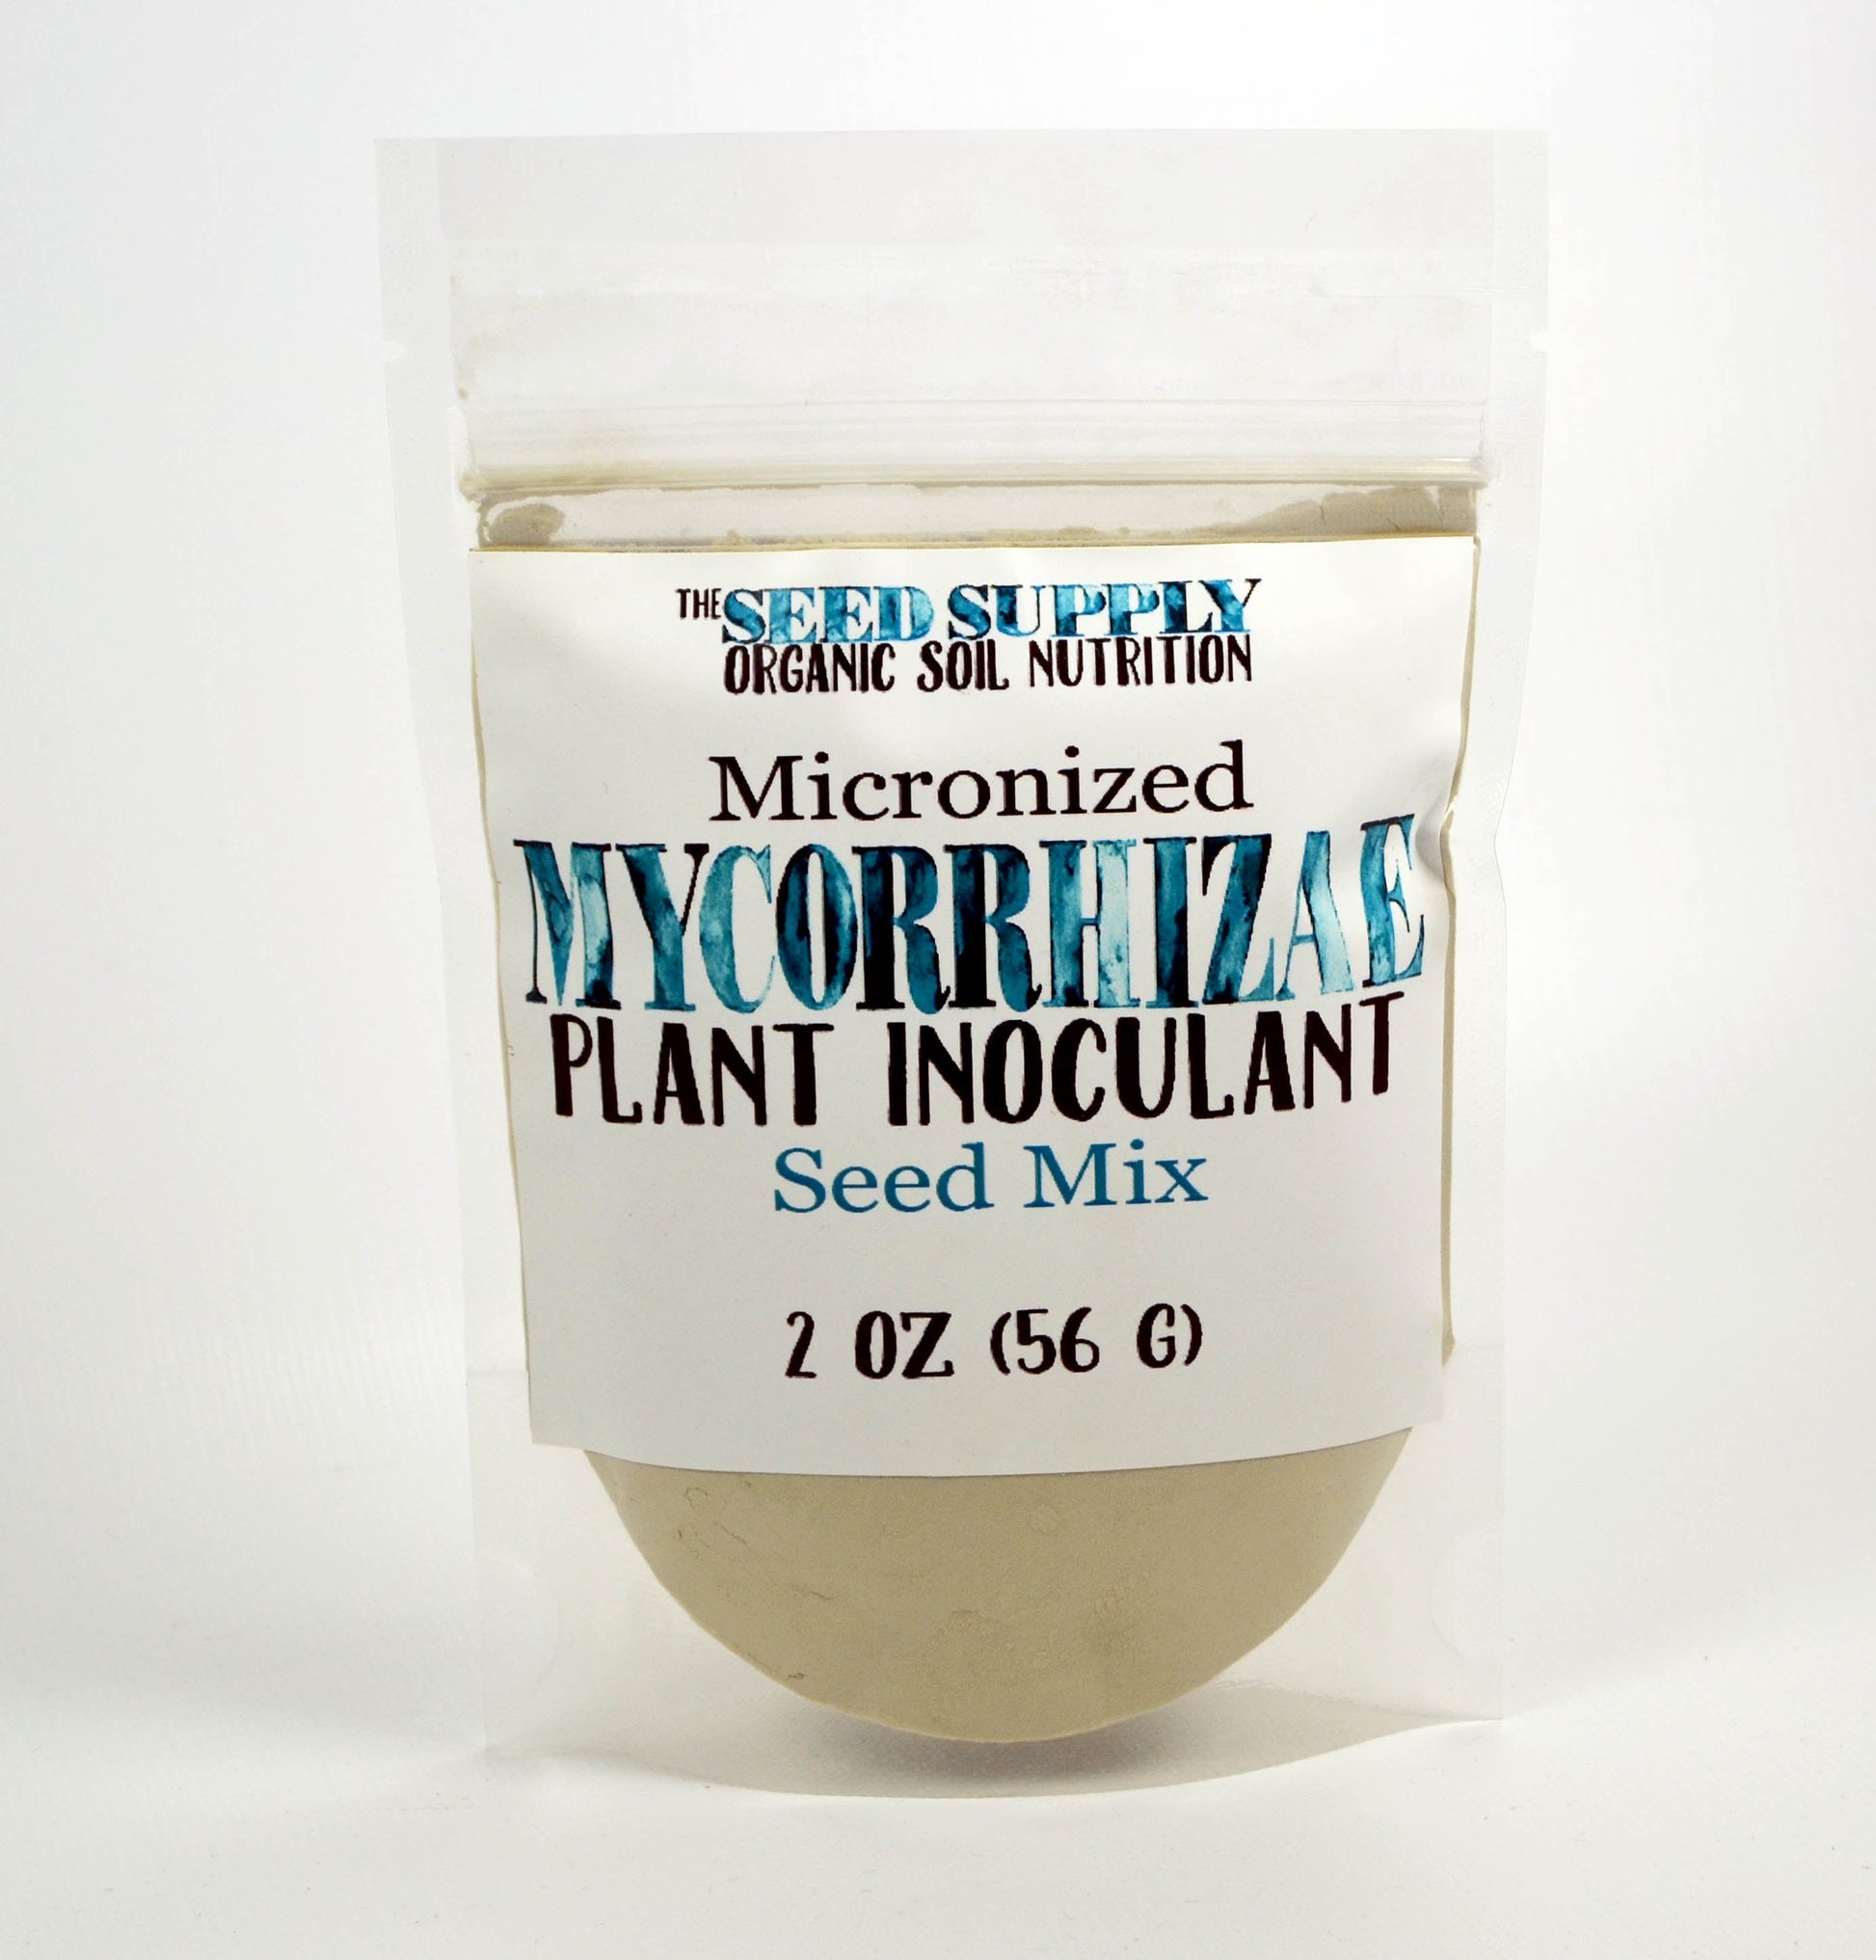 endo/ecto mycorrhizae fungi seed mix